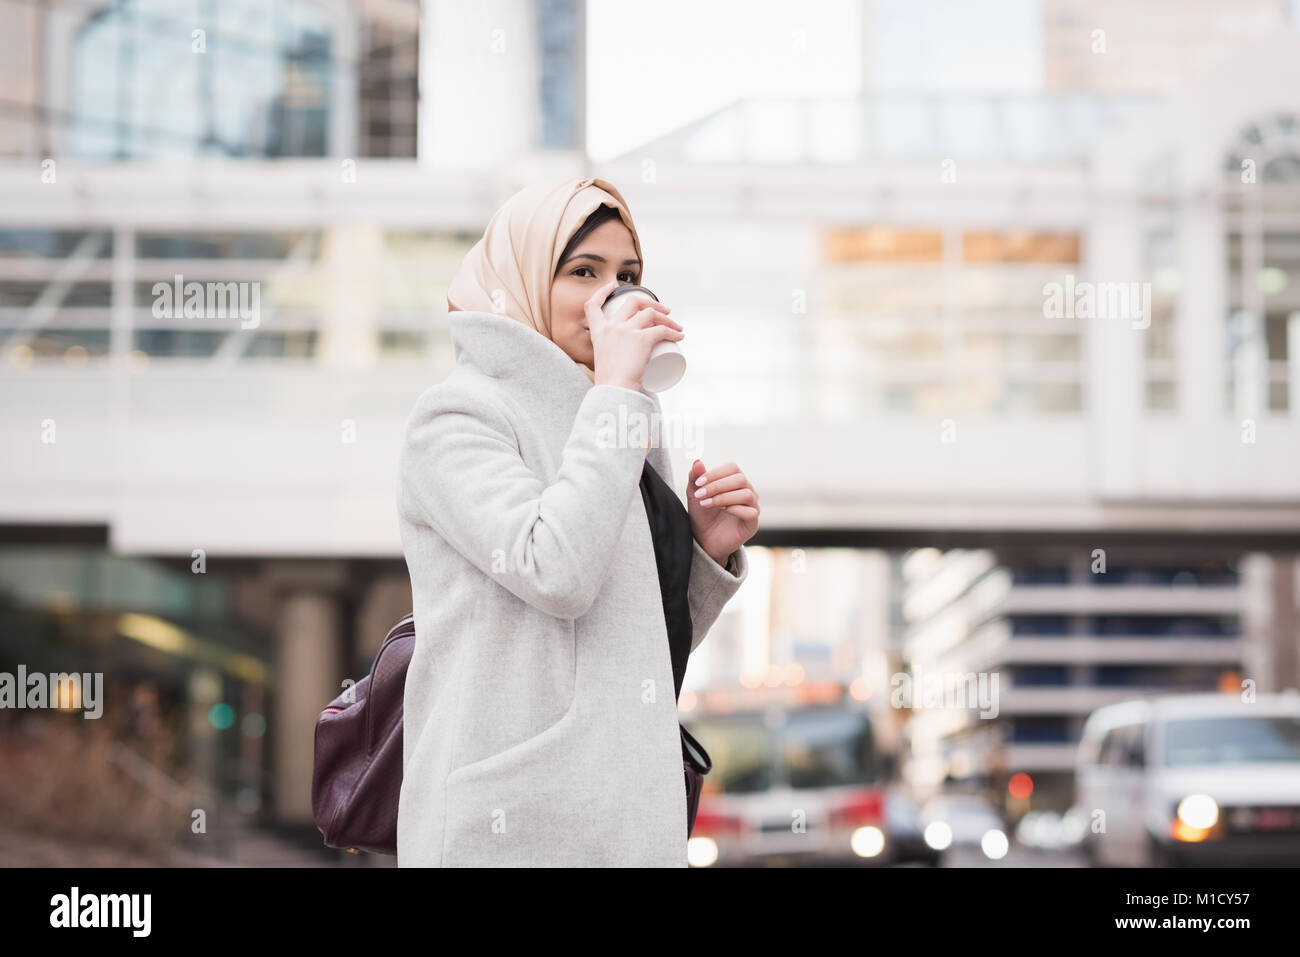 Woman in hijab drinking coffee Stock Photo